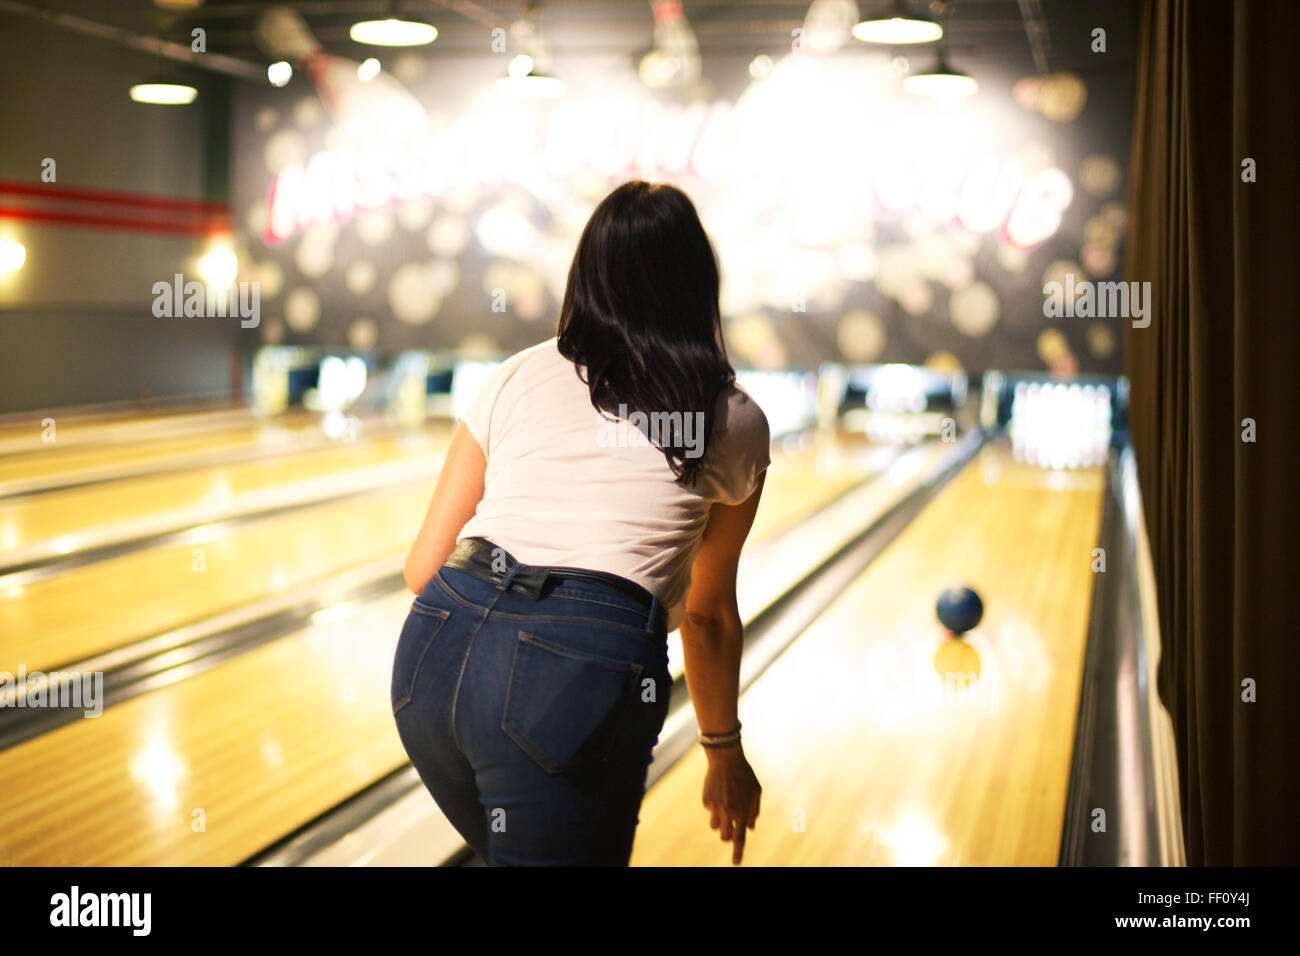 Le retour d'une femme dans une pièce lumineuse bowling bowling, un ballon roule sur la voie vers les axes. Banque D'Images